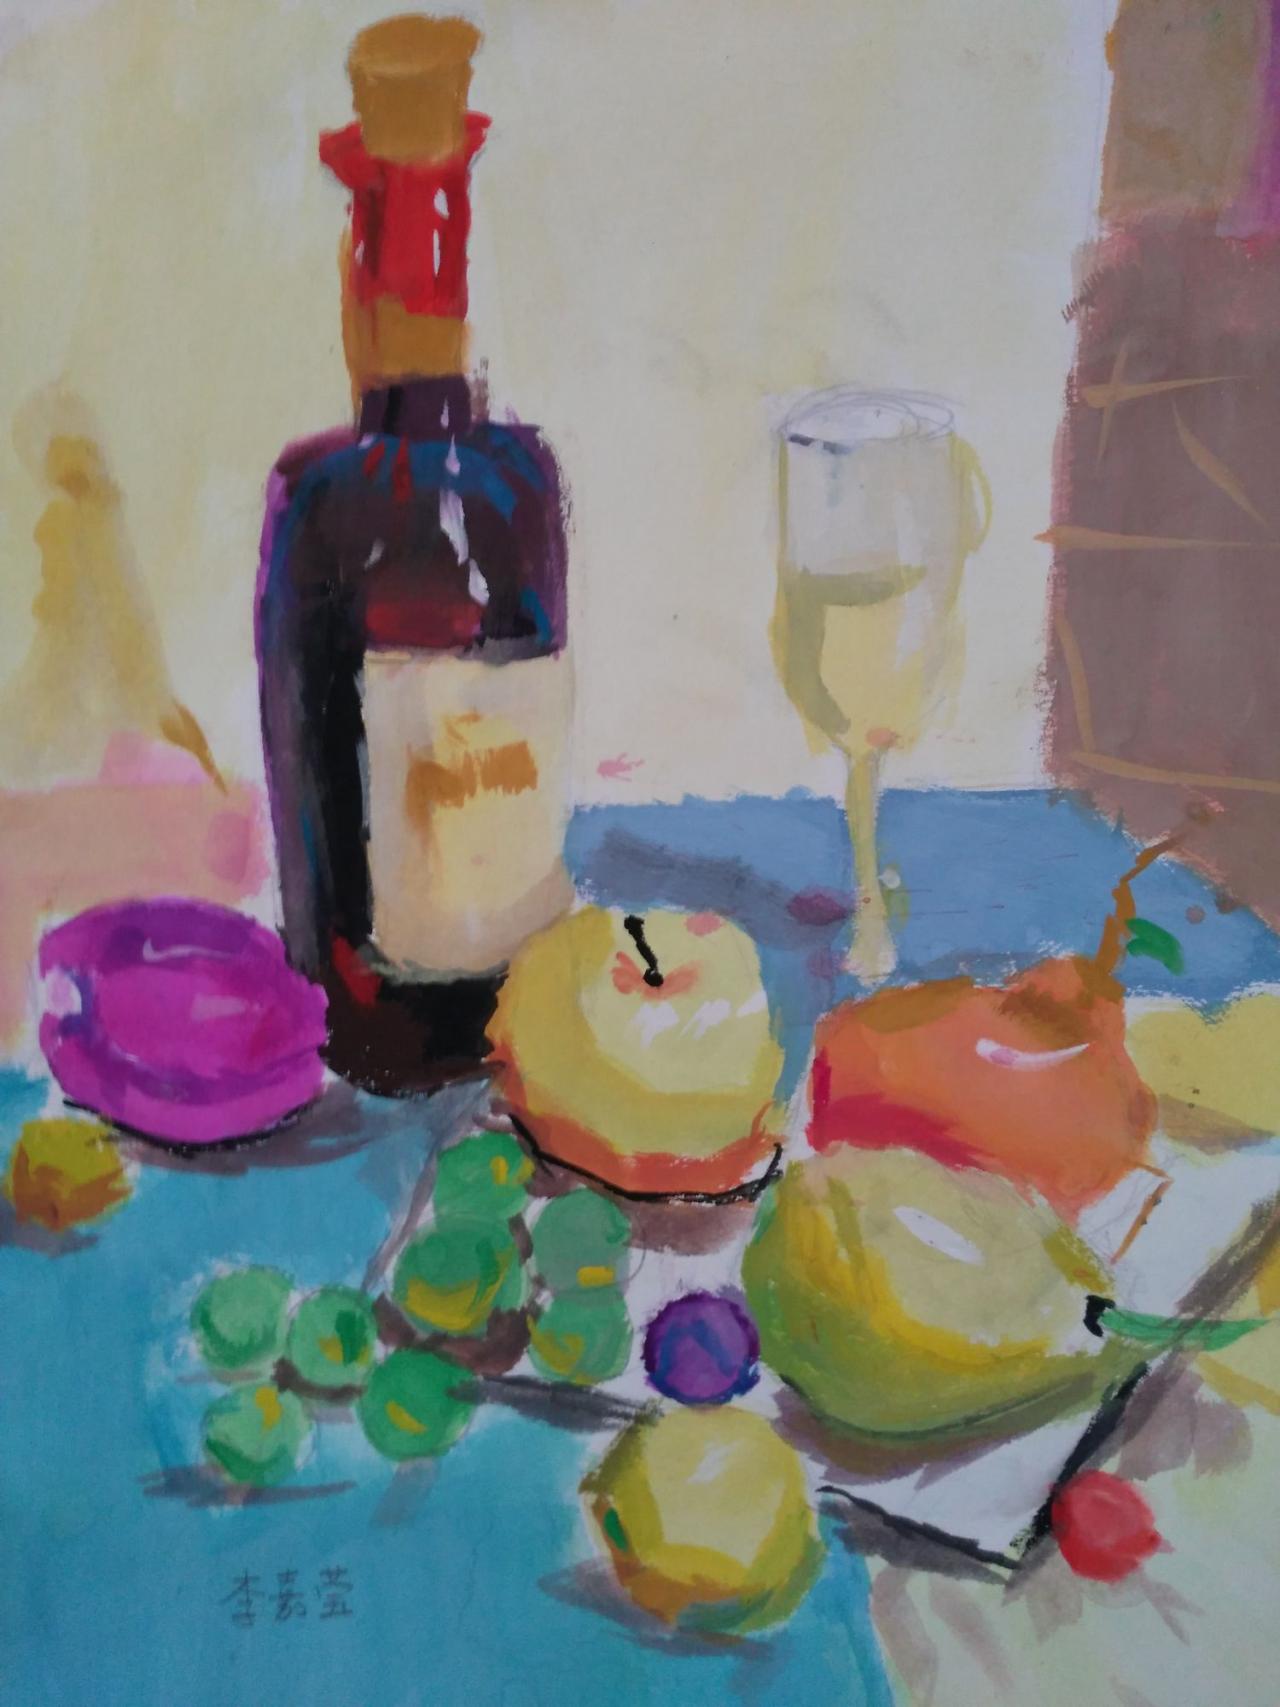 水粉静物 酒瓶、玻璃杯、梨、葡萄、盘子等 李嘉莹画